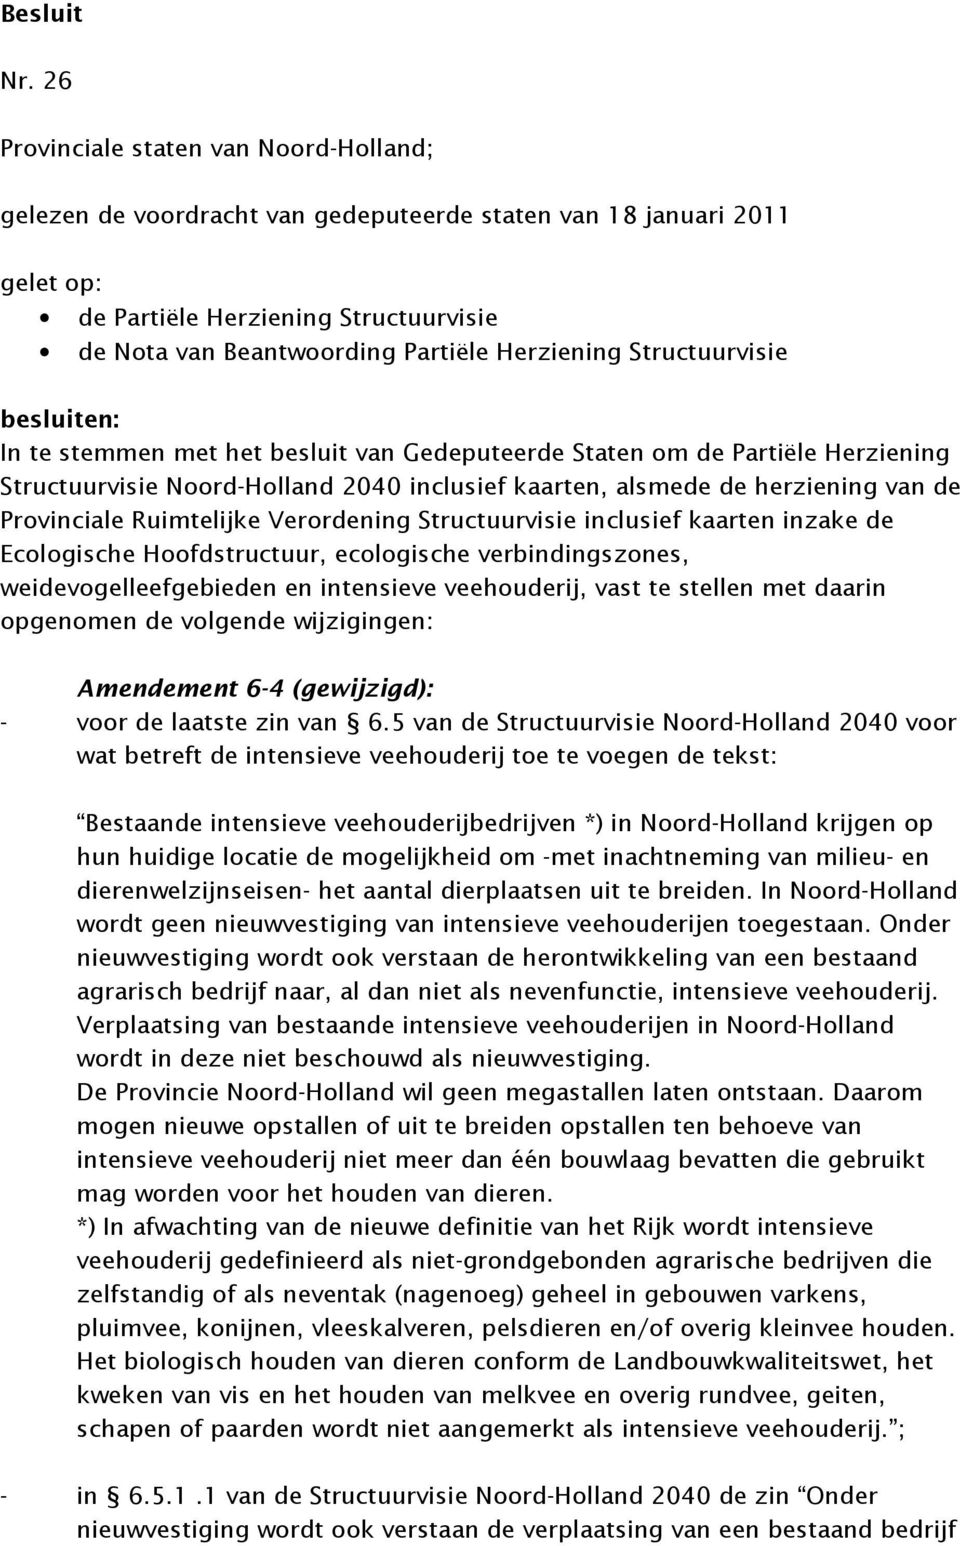 Herziening Structuurvisie besluiten: In te stemmen met het besluit van Gedeputeerde Staten om de Partiële Herziening Structuurvisie Noord-Holland 2040 inclusief kaarten, alsmede de herziening van de